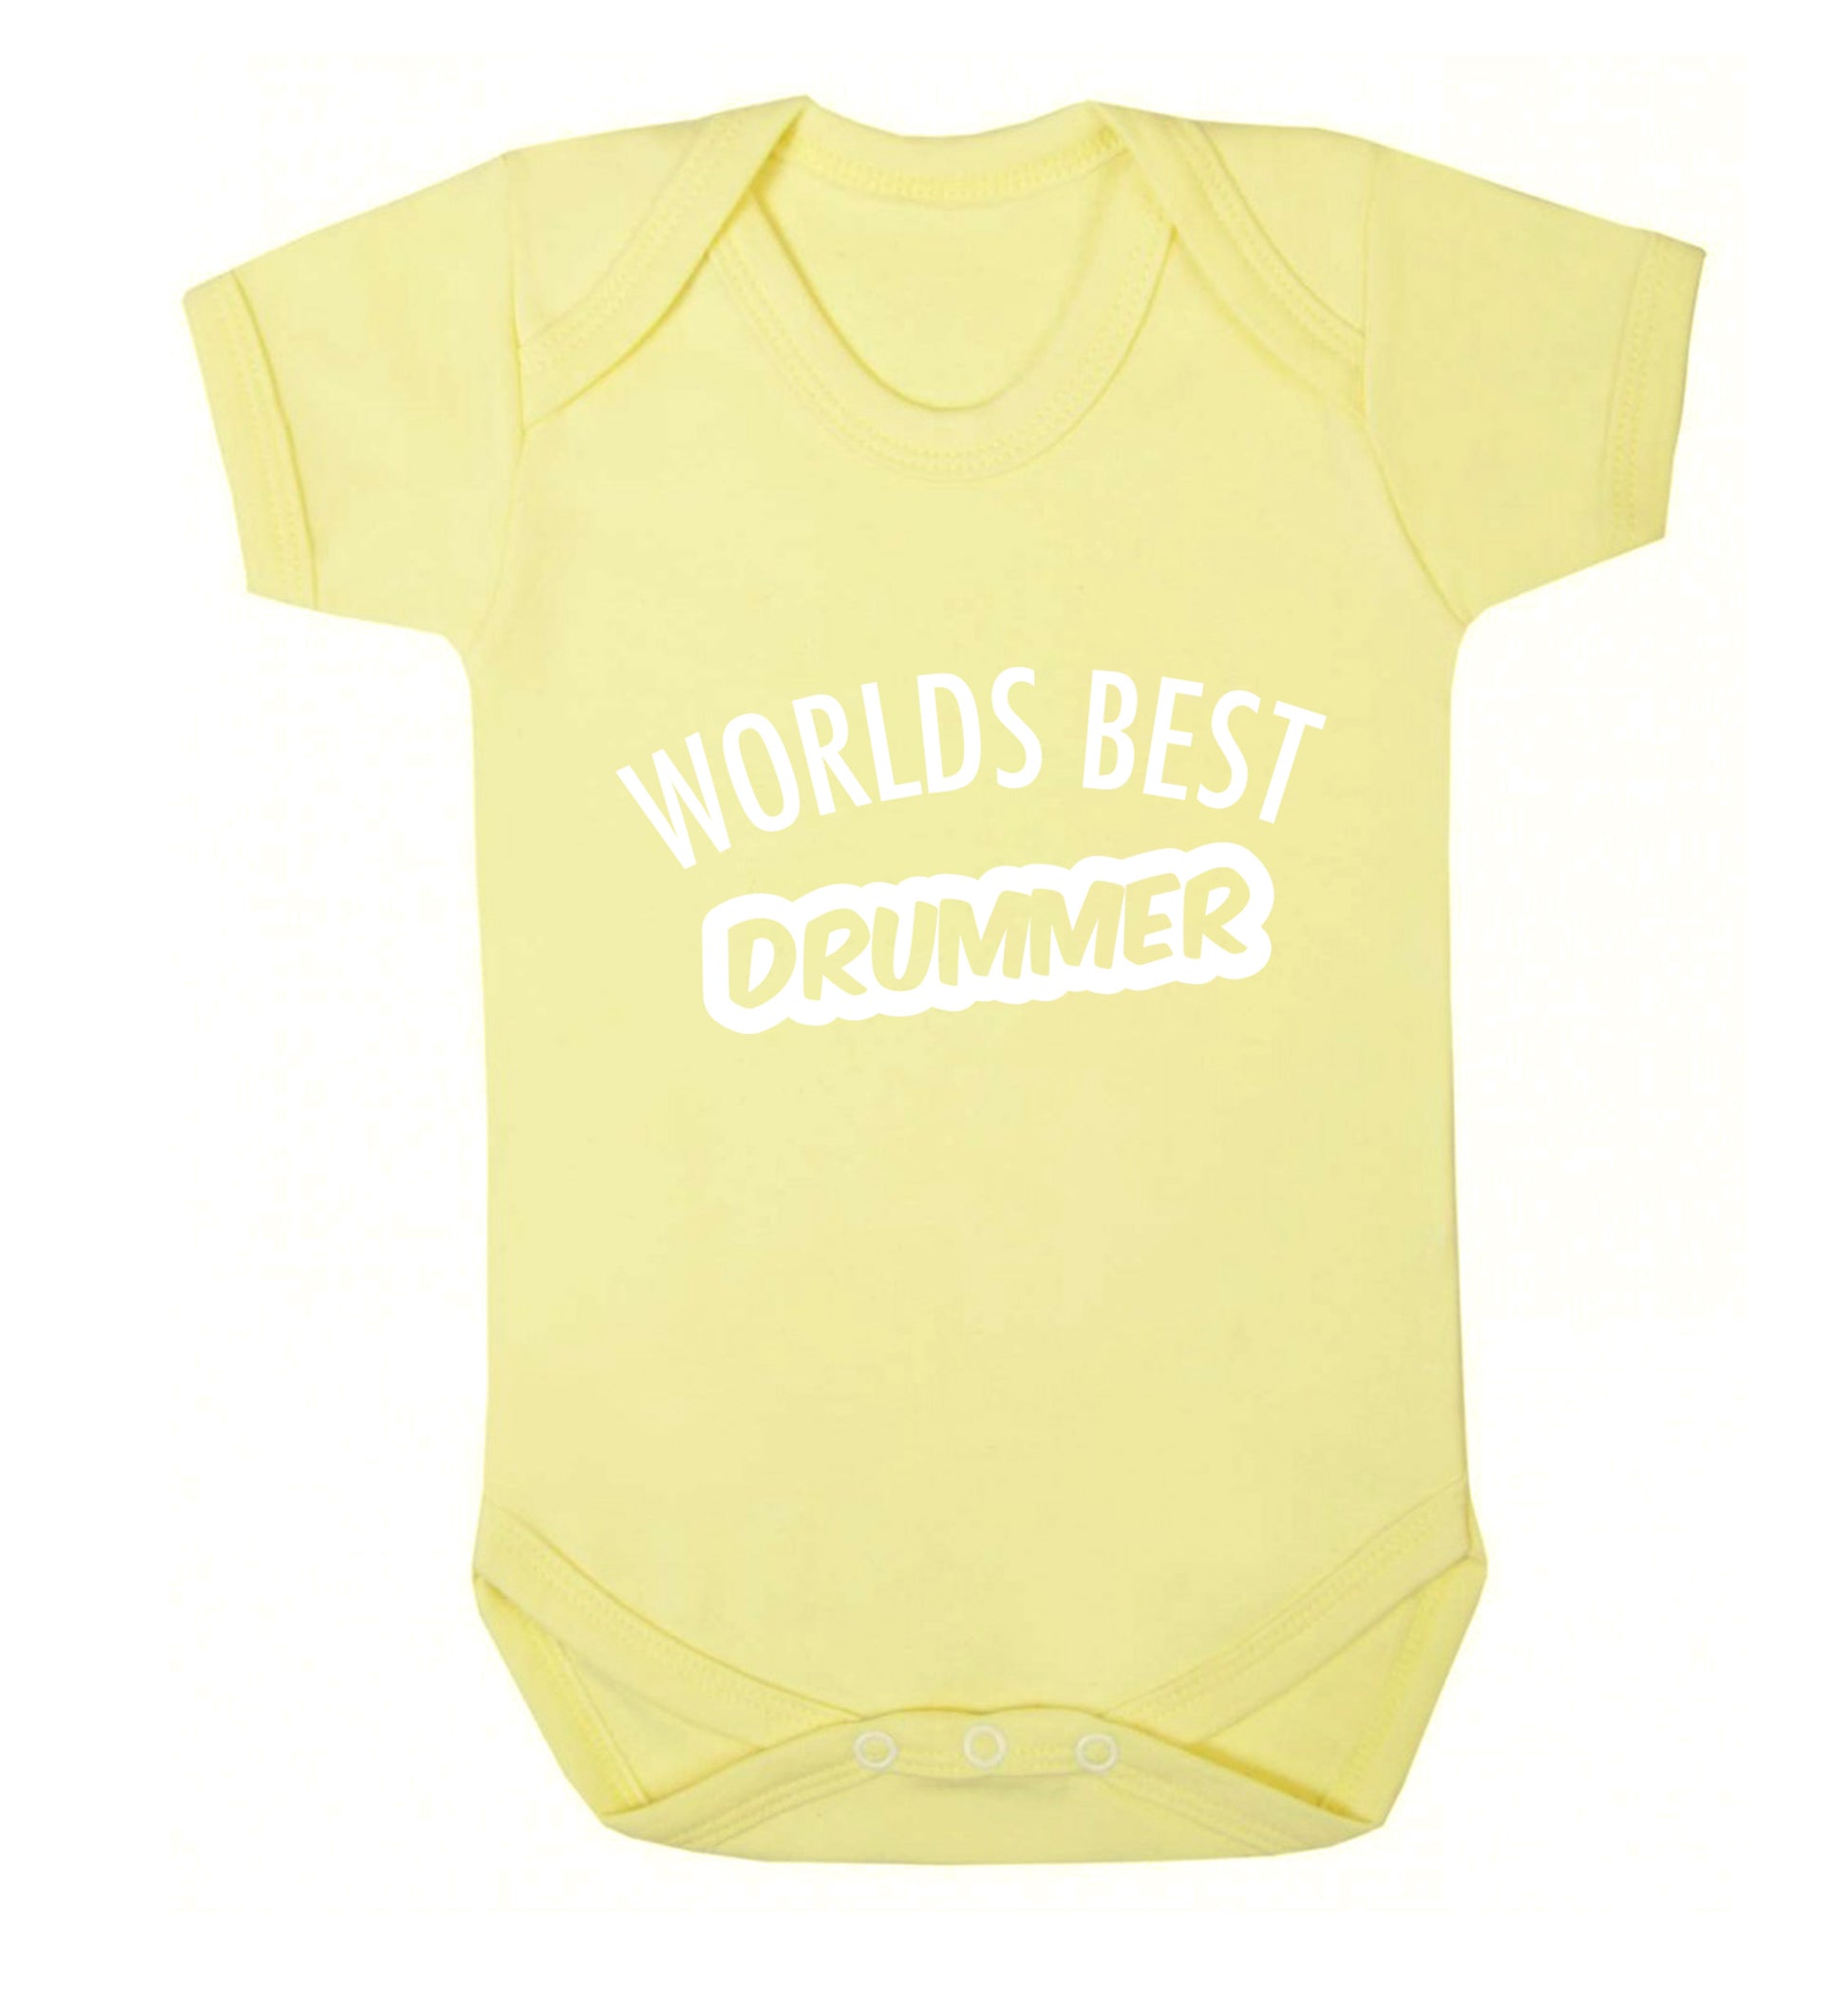 Worlds best drummer Baby Vest pale yellow 18-24 months